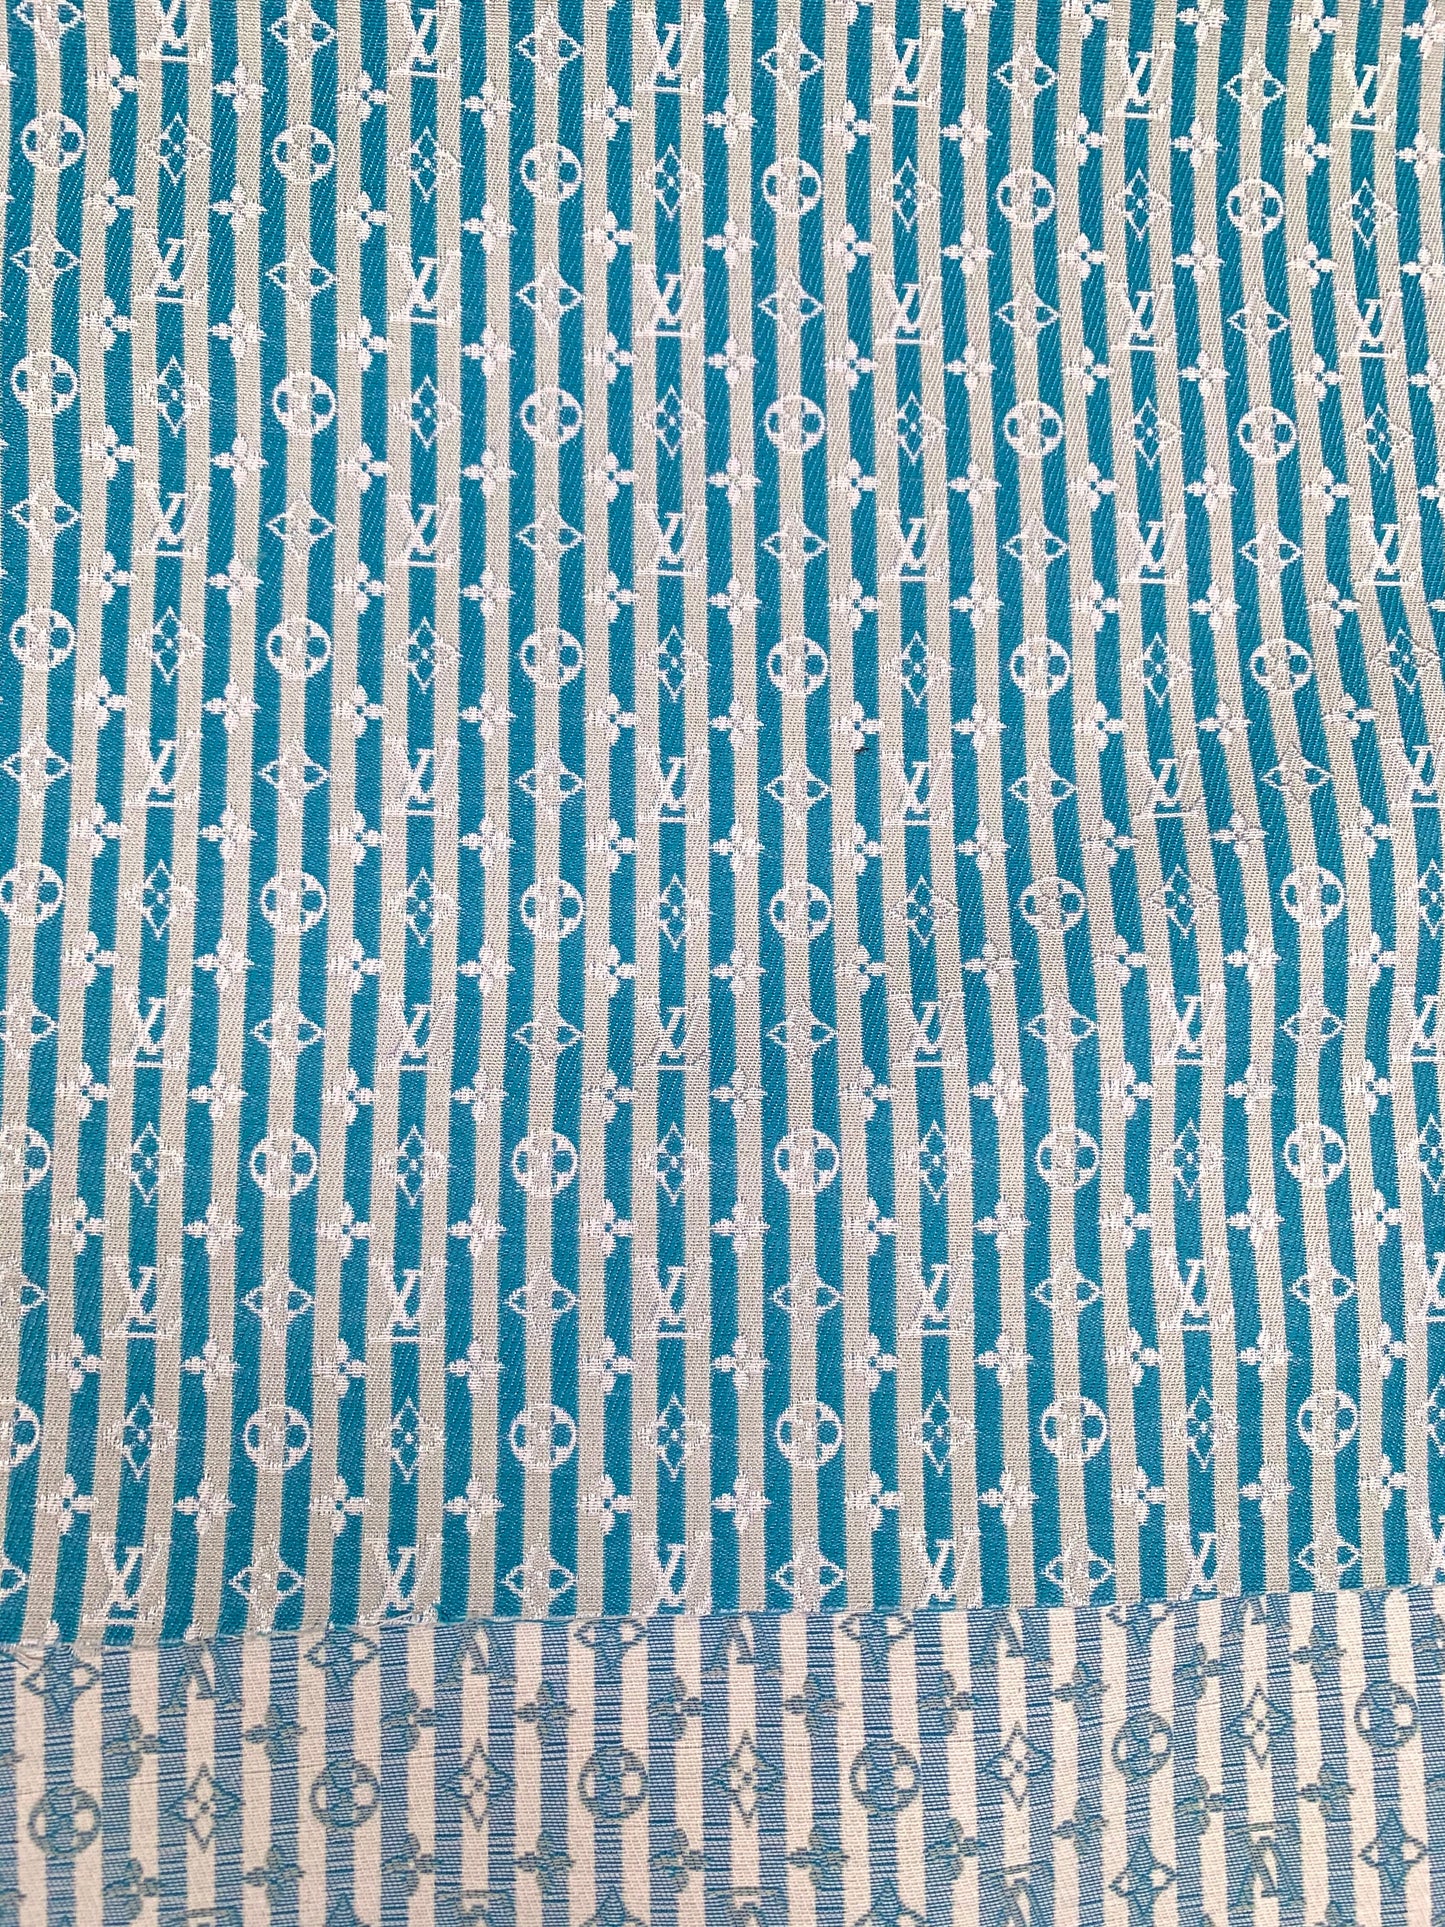 Designer Fabric Stripe LV Cotton Jacquard for Handmade Crafts